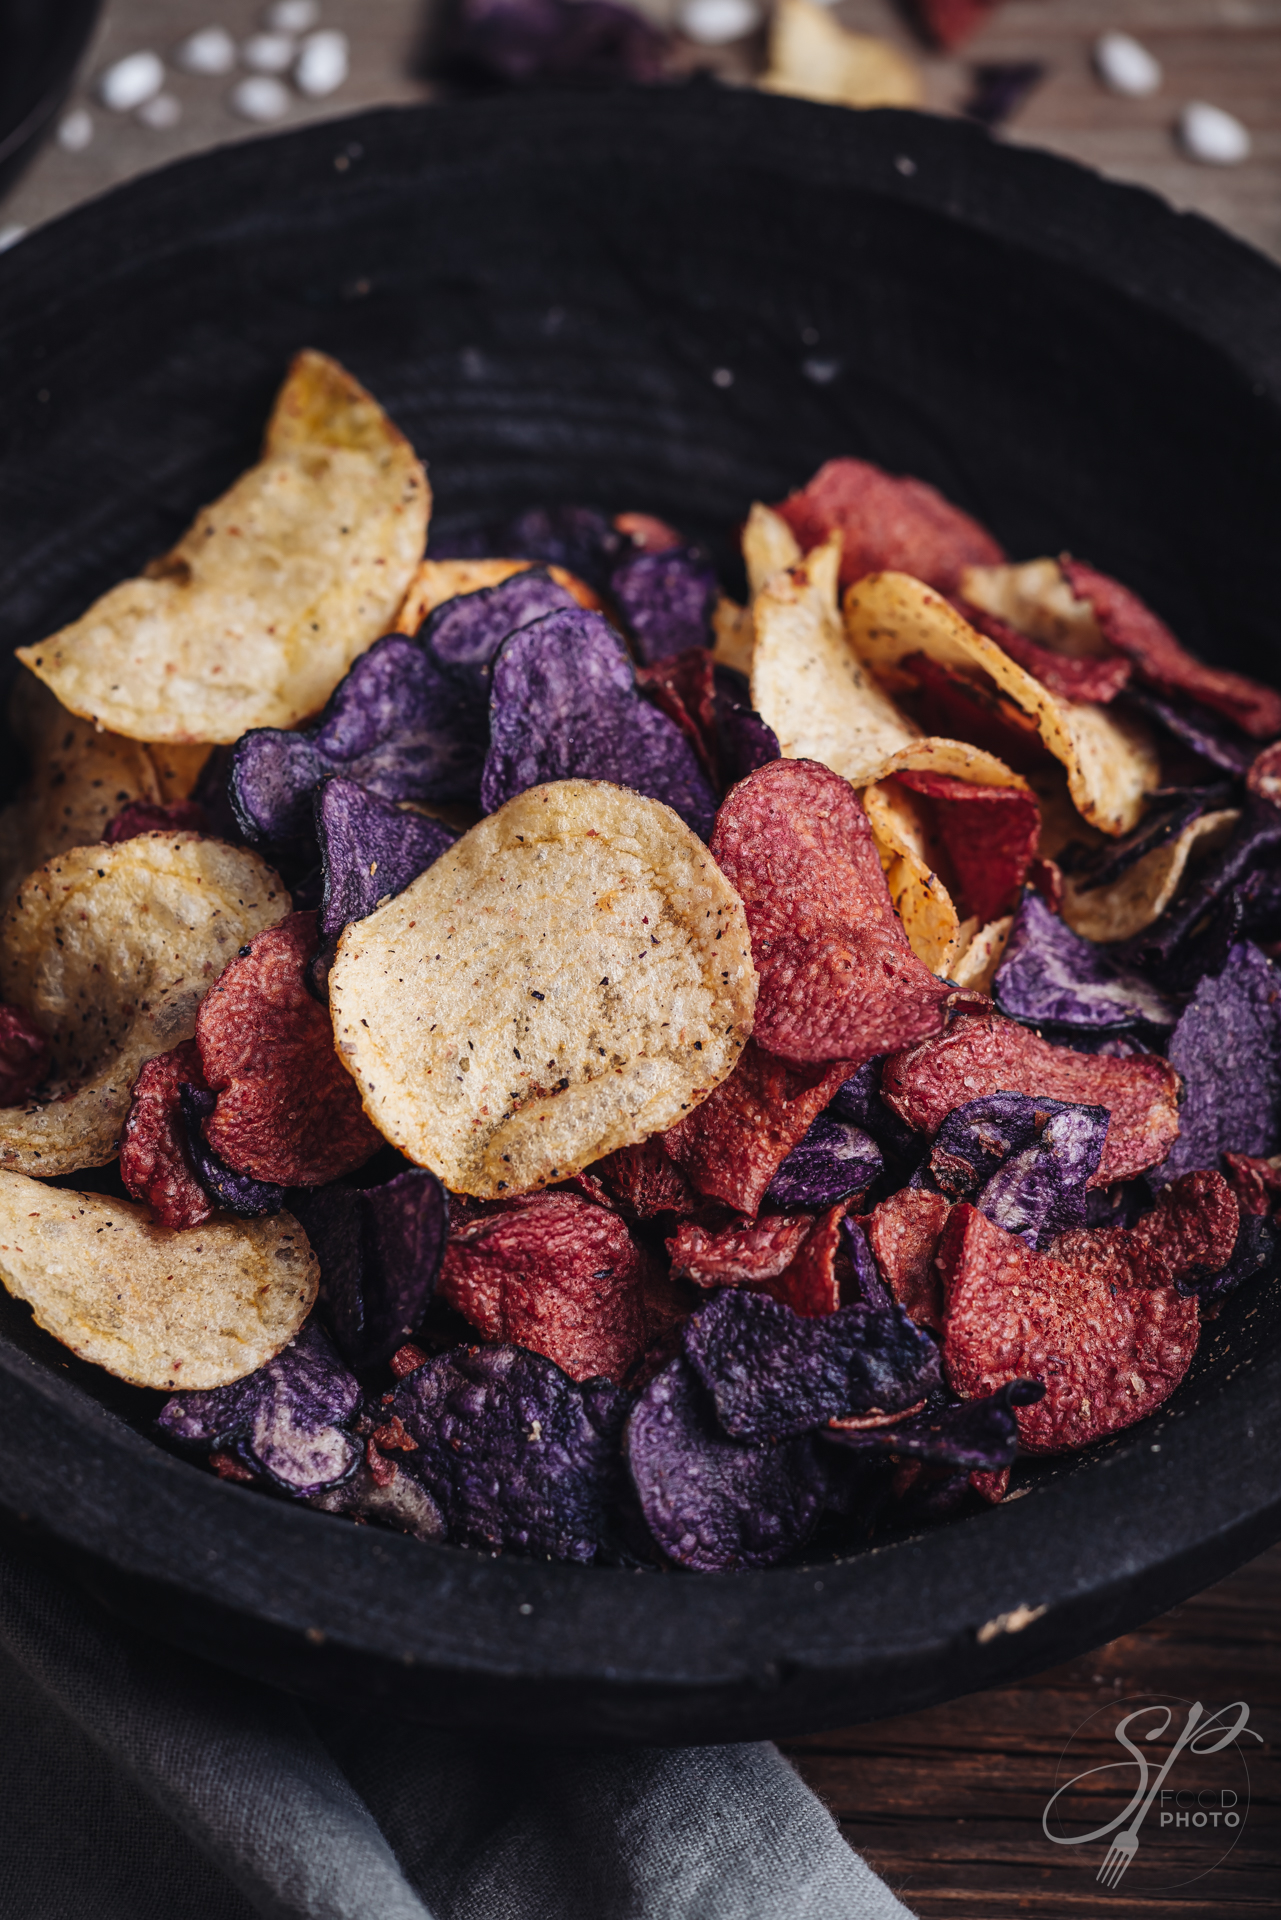 Colored crispy potato chips